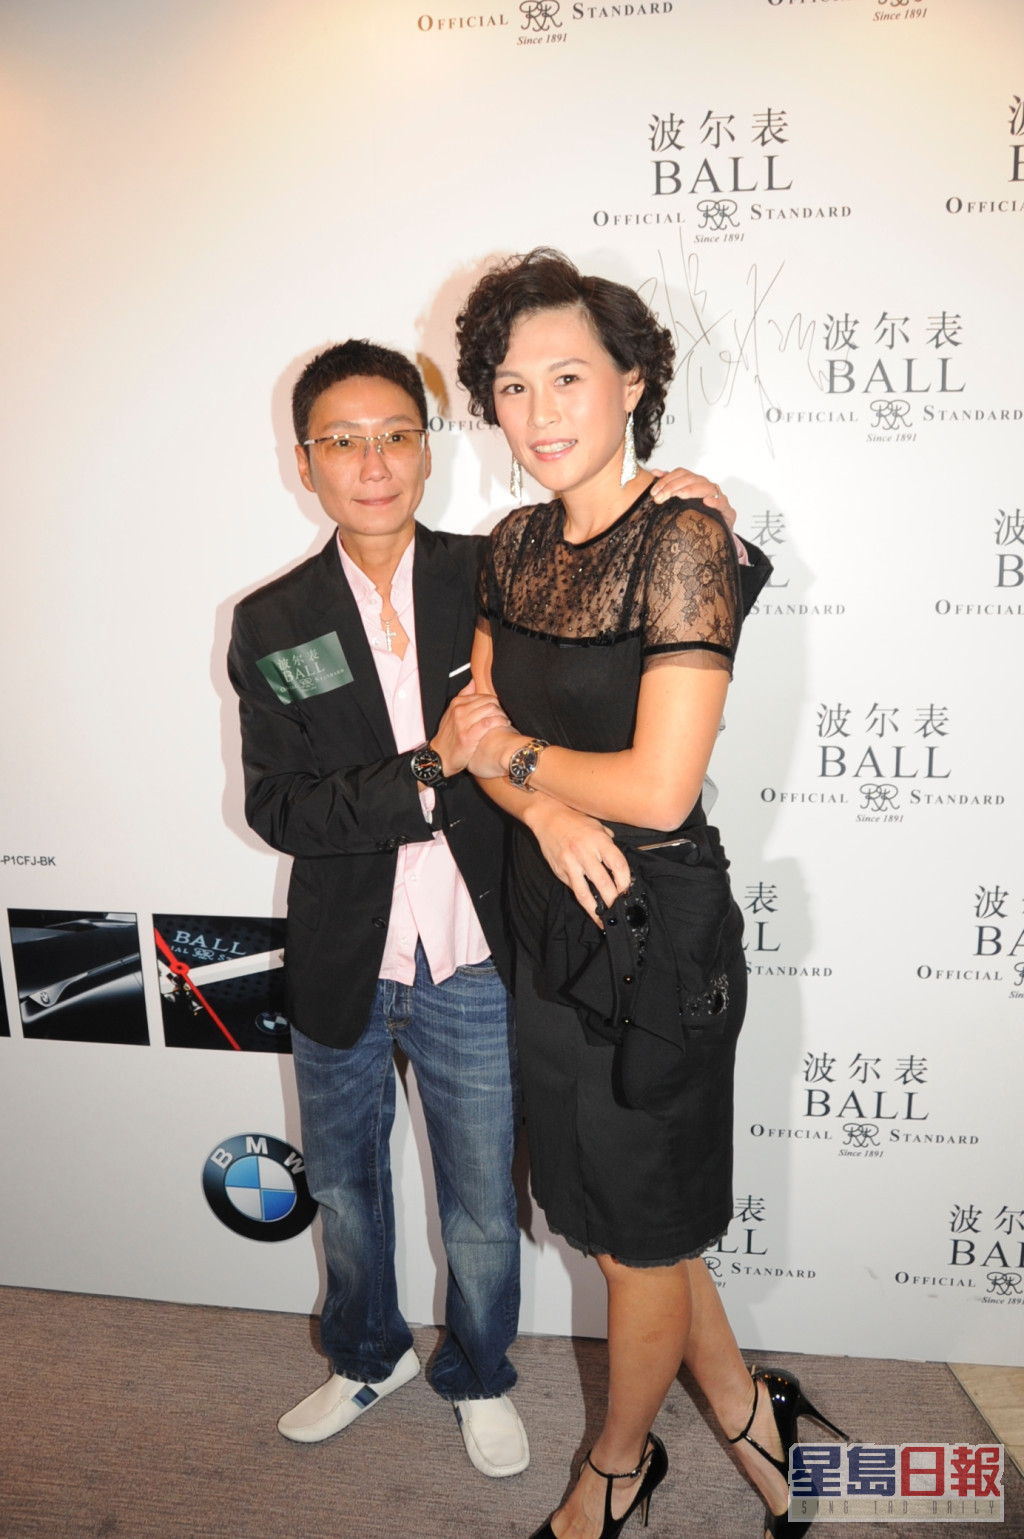 赵式芝在2012年懒理父母反对，与杨如芯于法国秘密结婚。